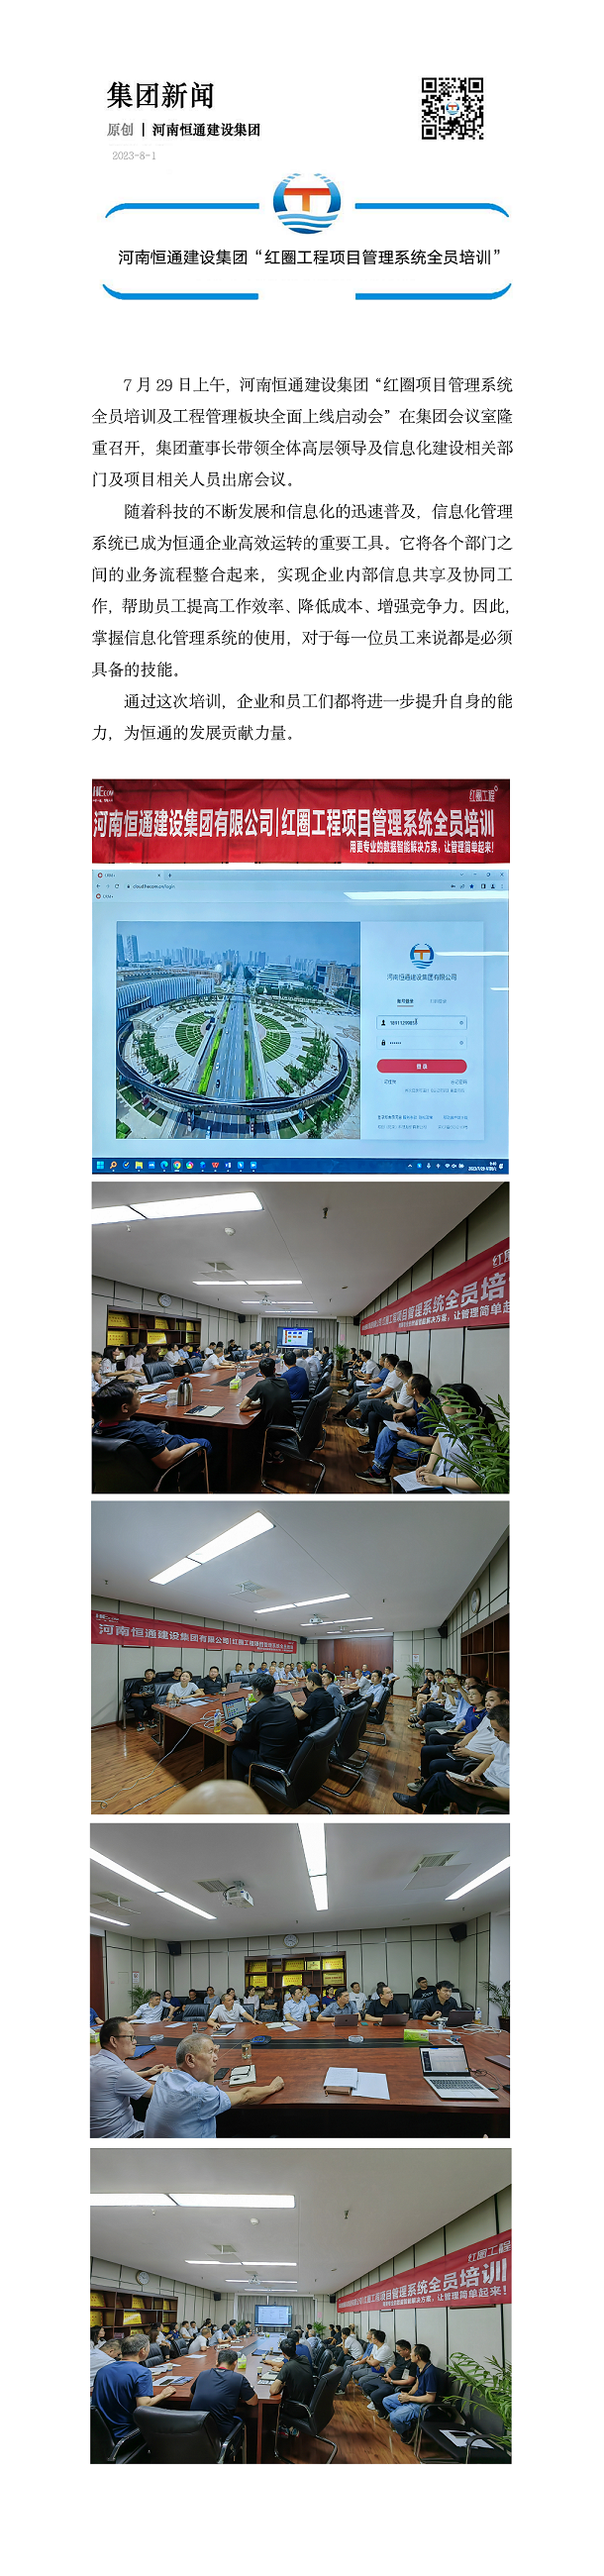 河南恒通建设集团“红圈工程项目管理系统全员培训”